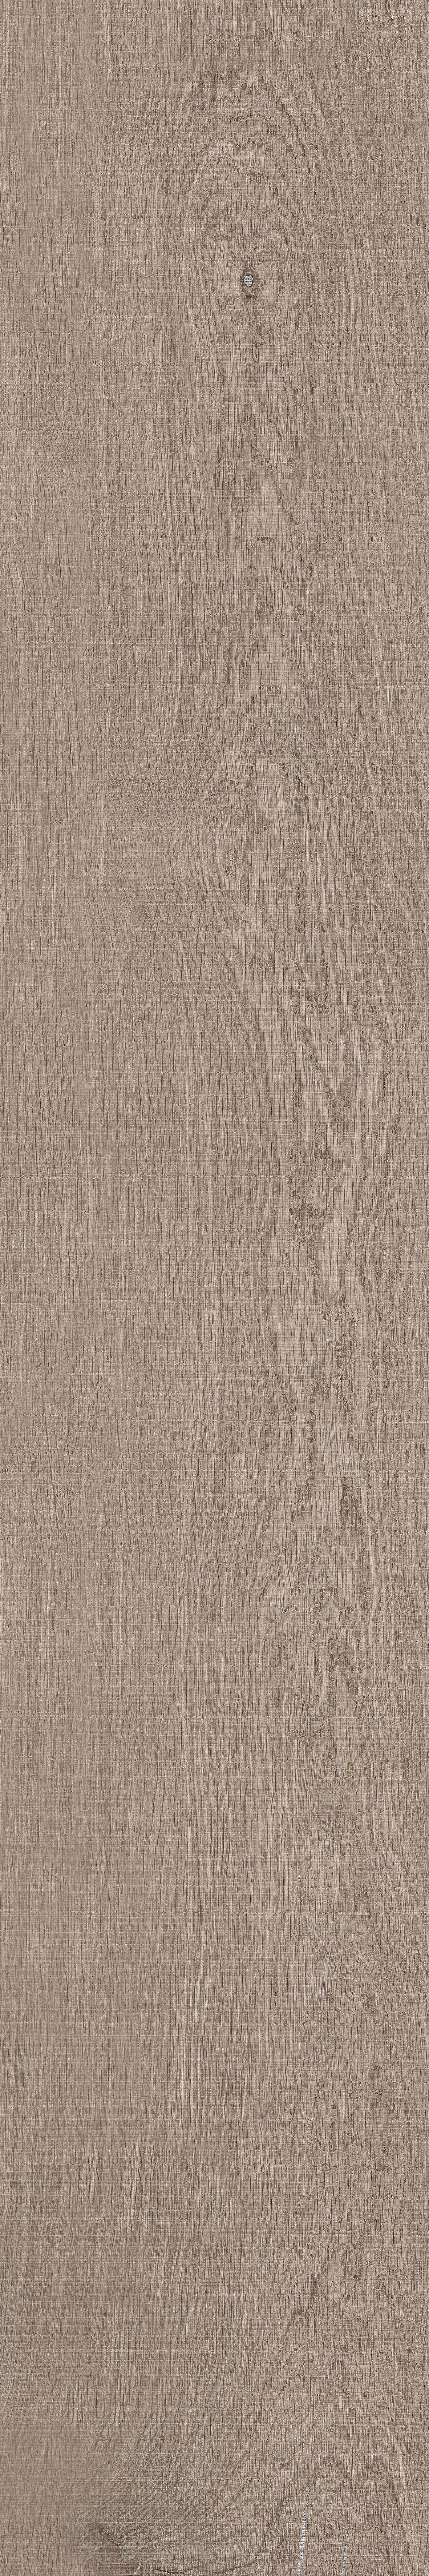 ABK Crossroad Wood Tan Naturale Tan PF60000546 natur 20x120cm rektifiziert 8,5mm